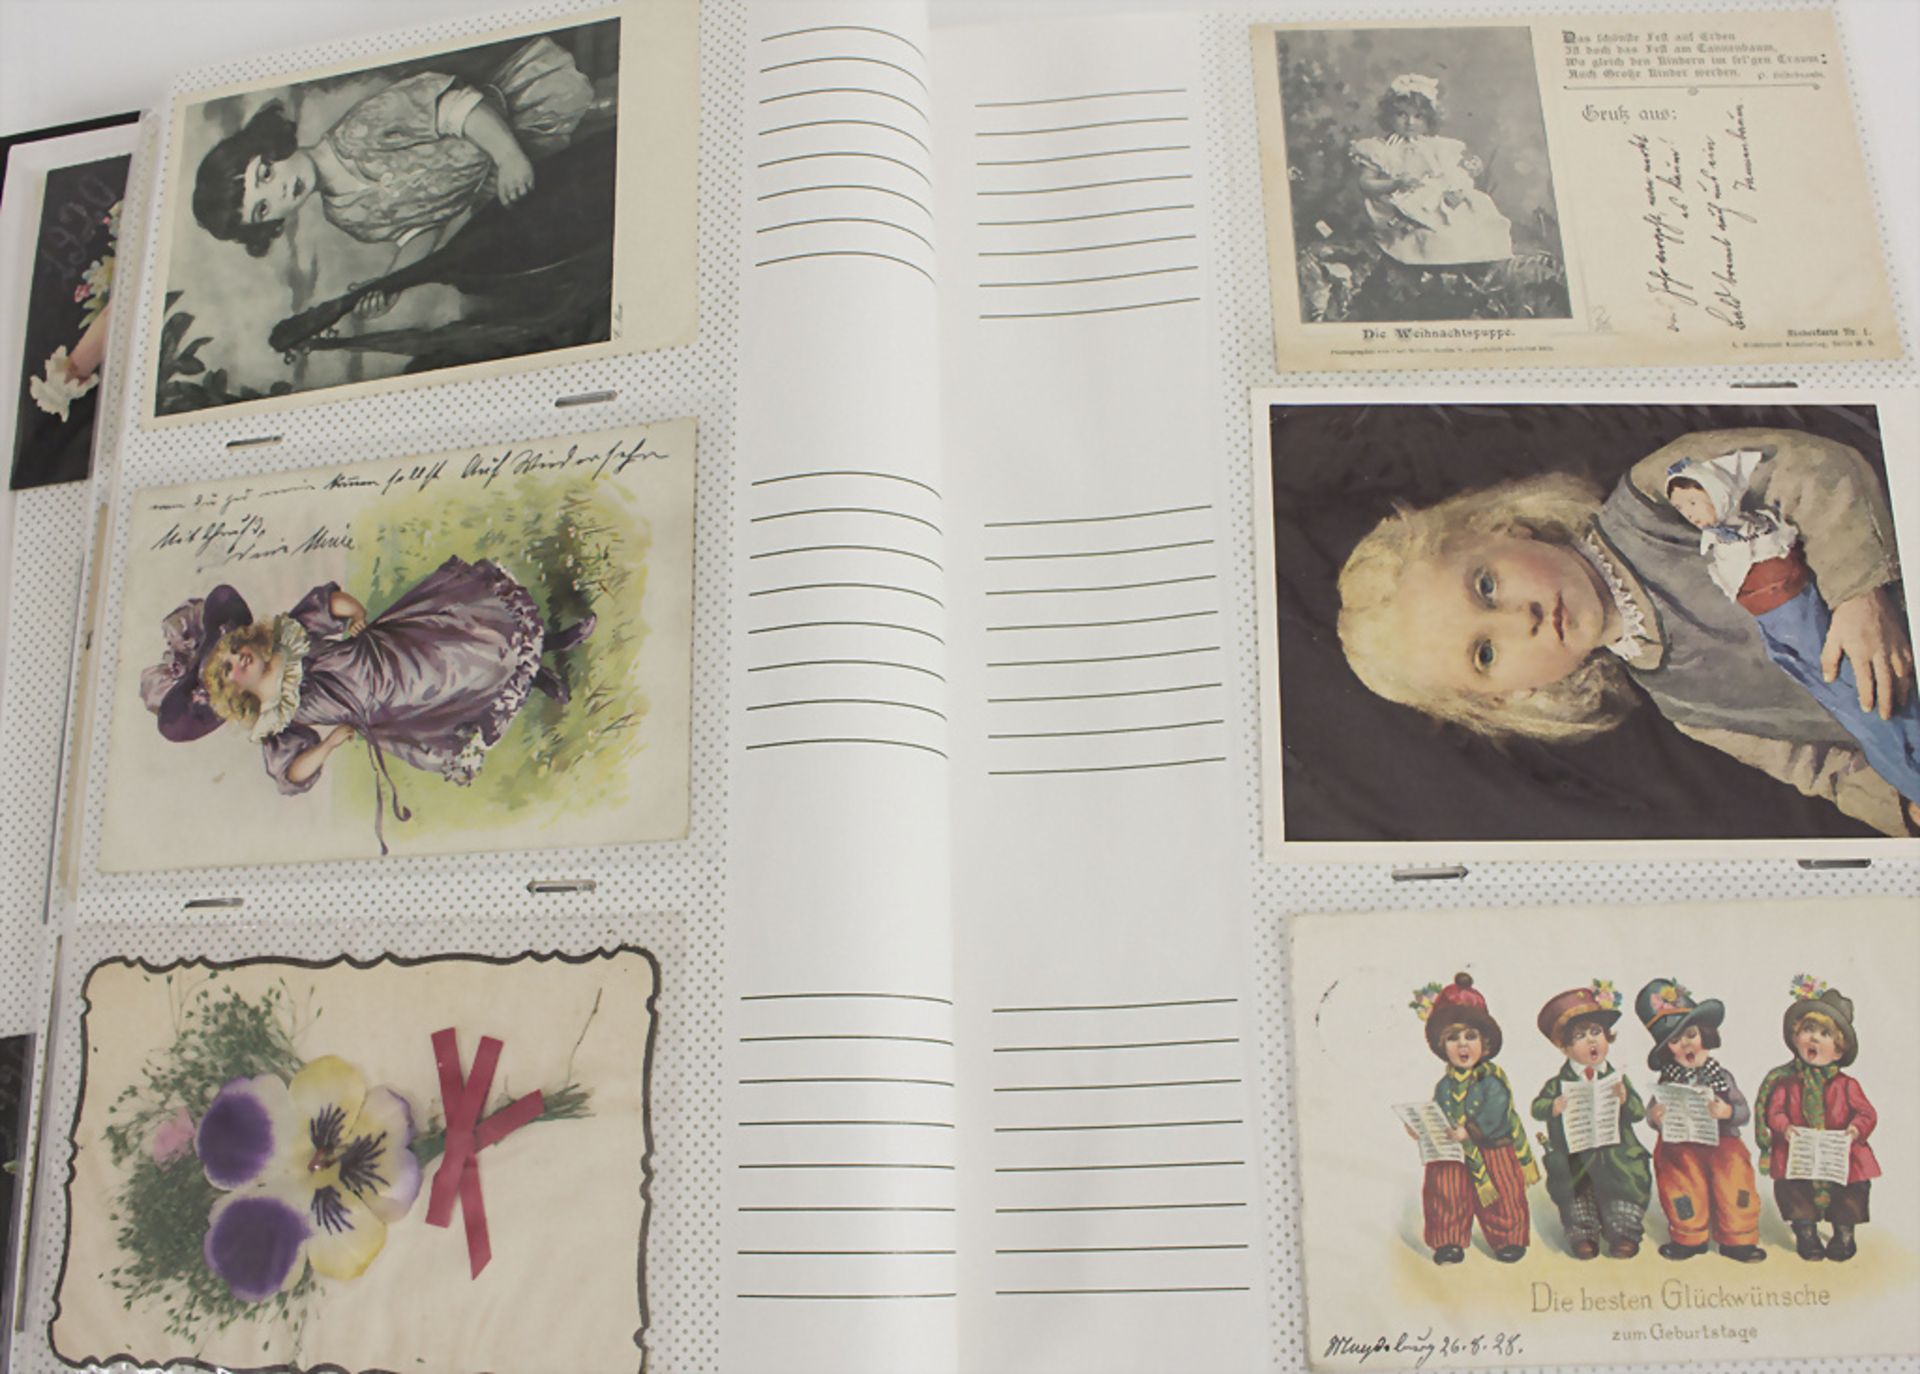 Album Postkarten 'Frauen / Kinder / Humor' / An album with postcards 'Women / Kids / Humor'